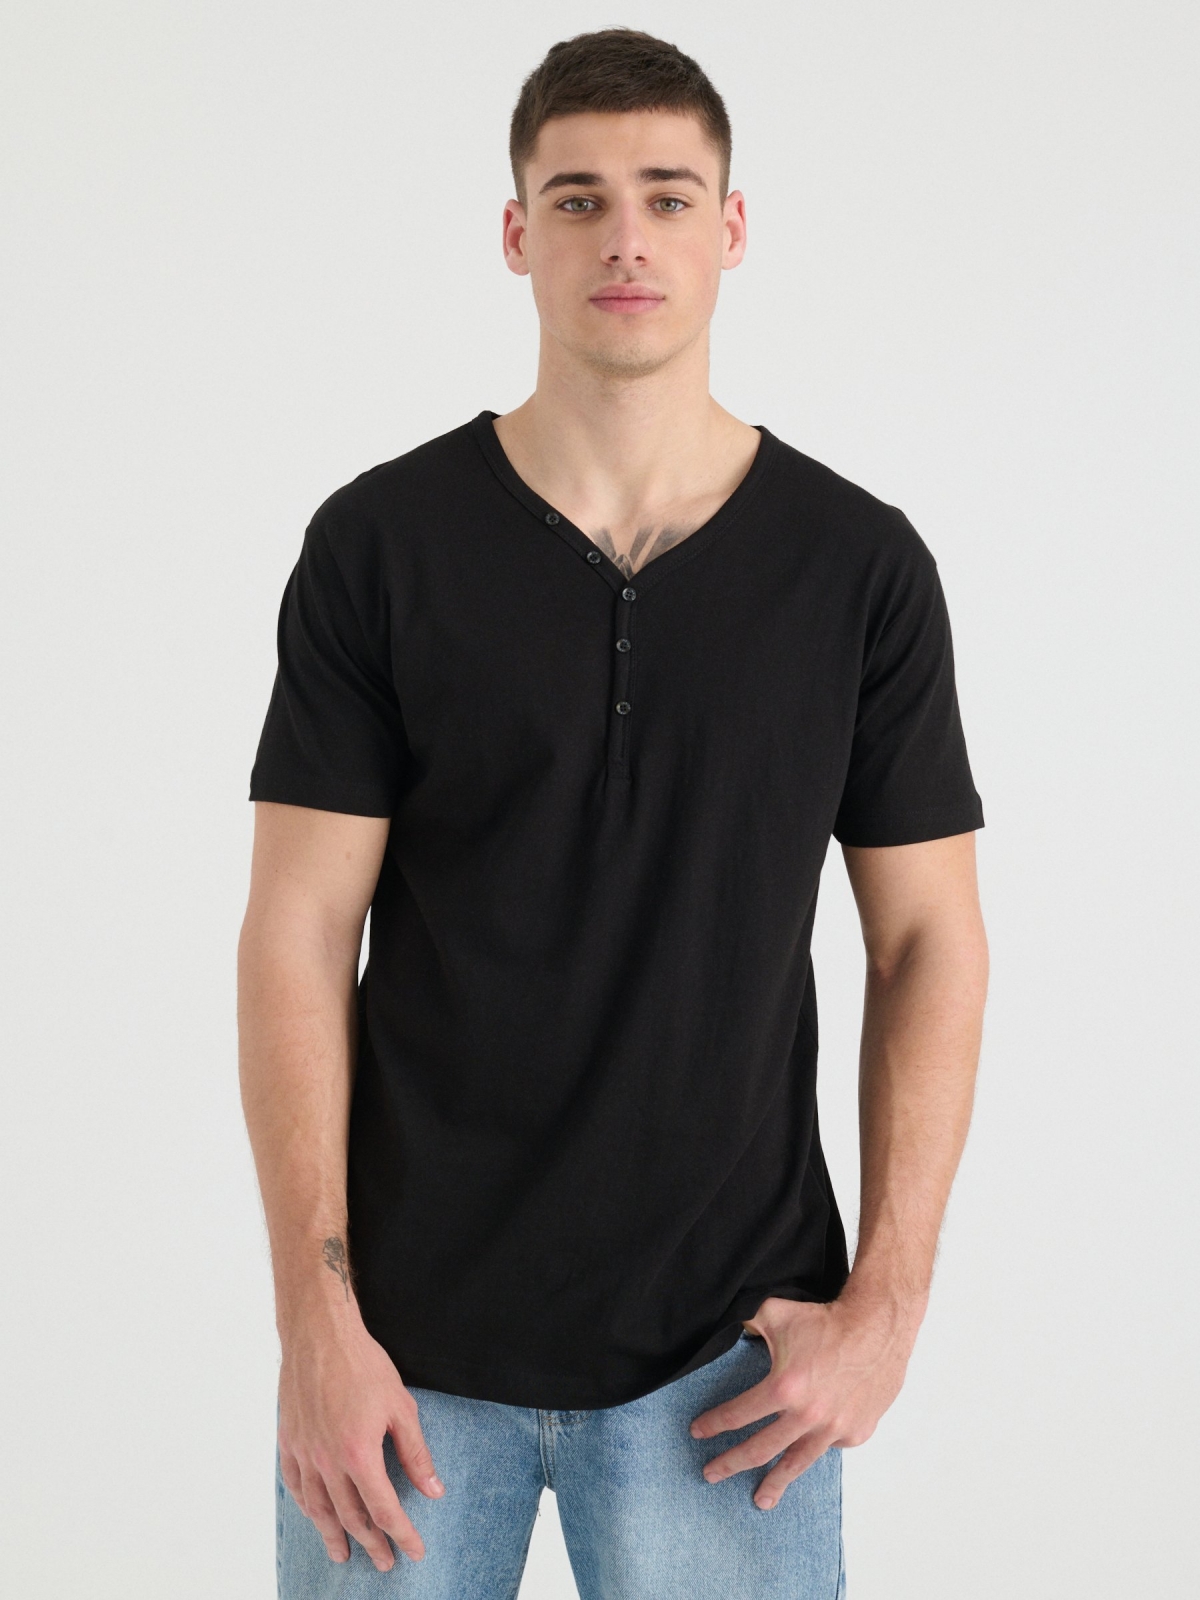 T-shirt gola com botões preto vista meia frontal